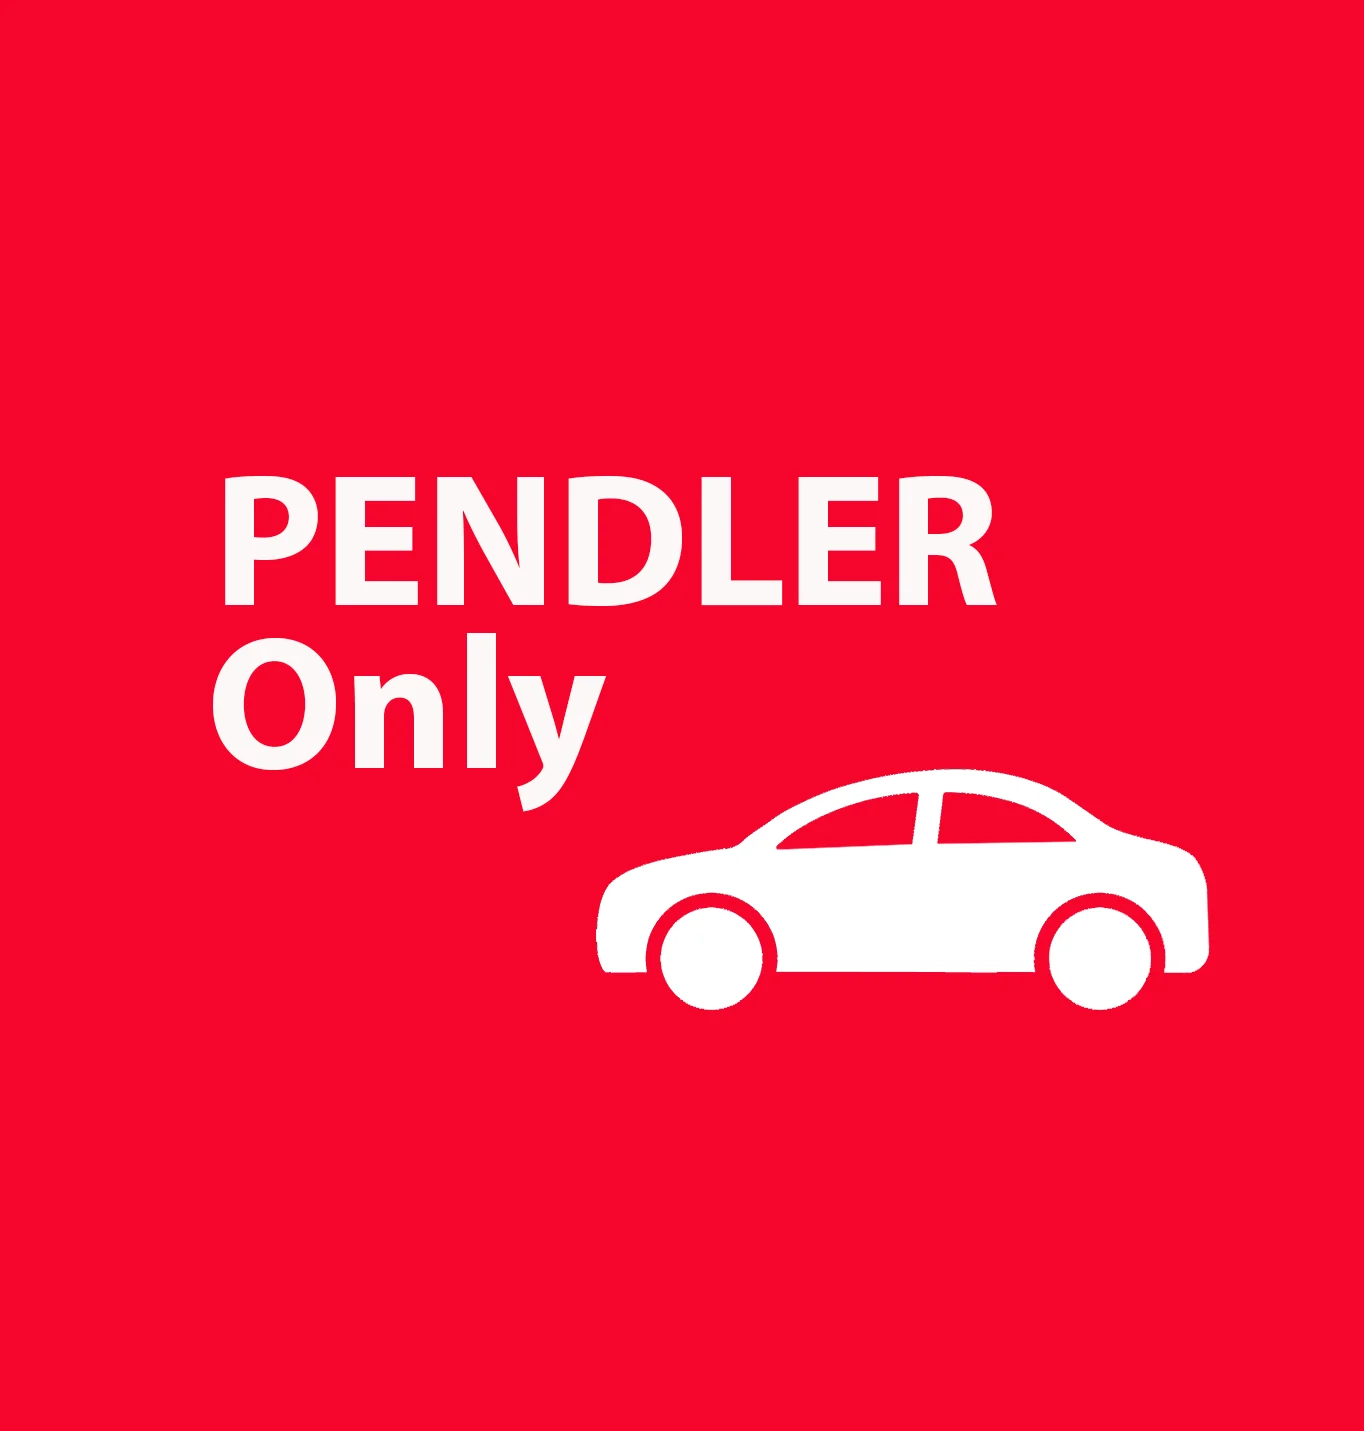 Rødt skilt med hvid tekst, hvor der står PENDLER Only og et billede af en bil.